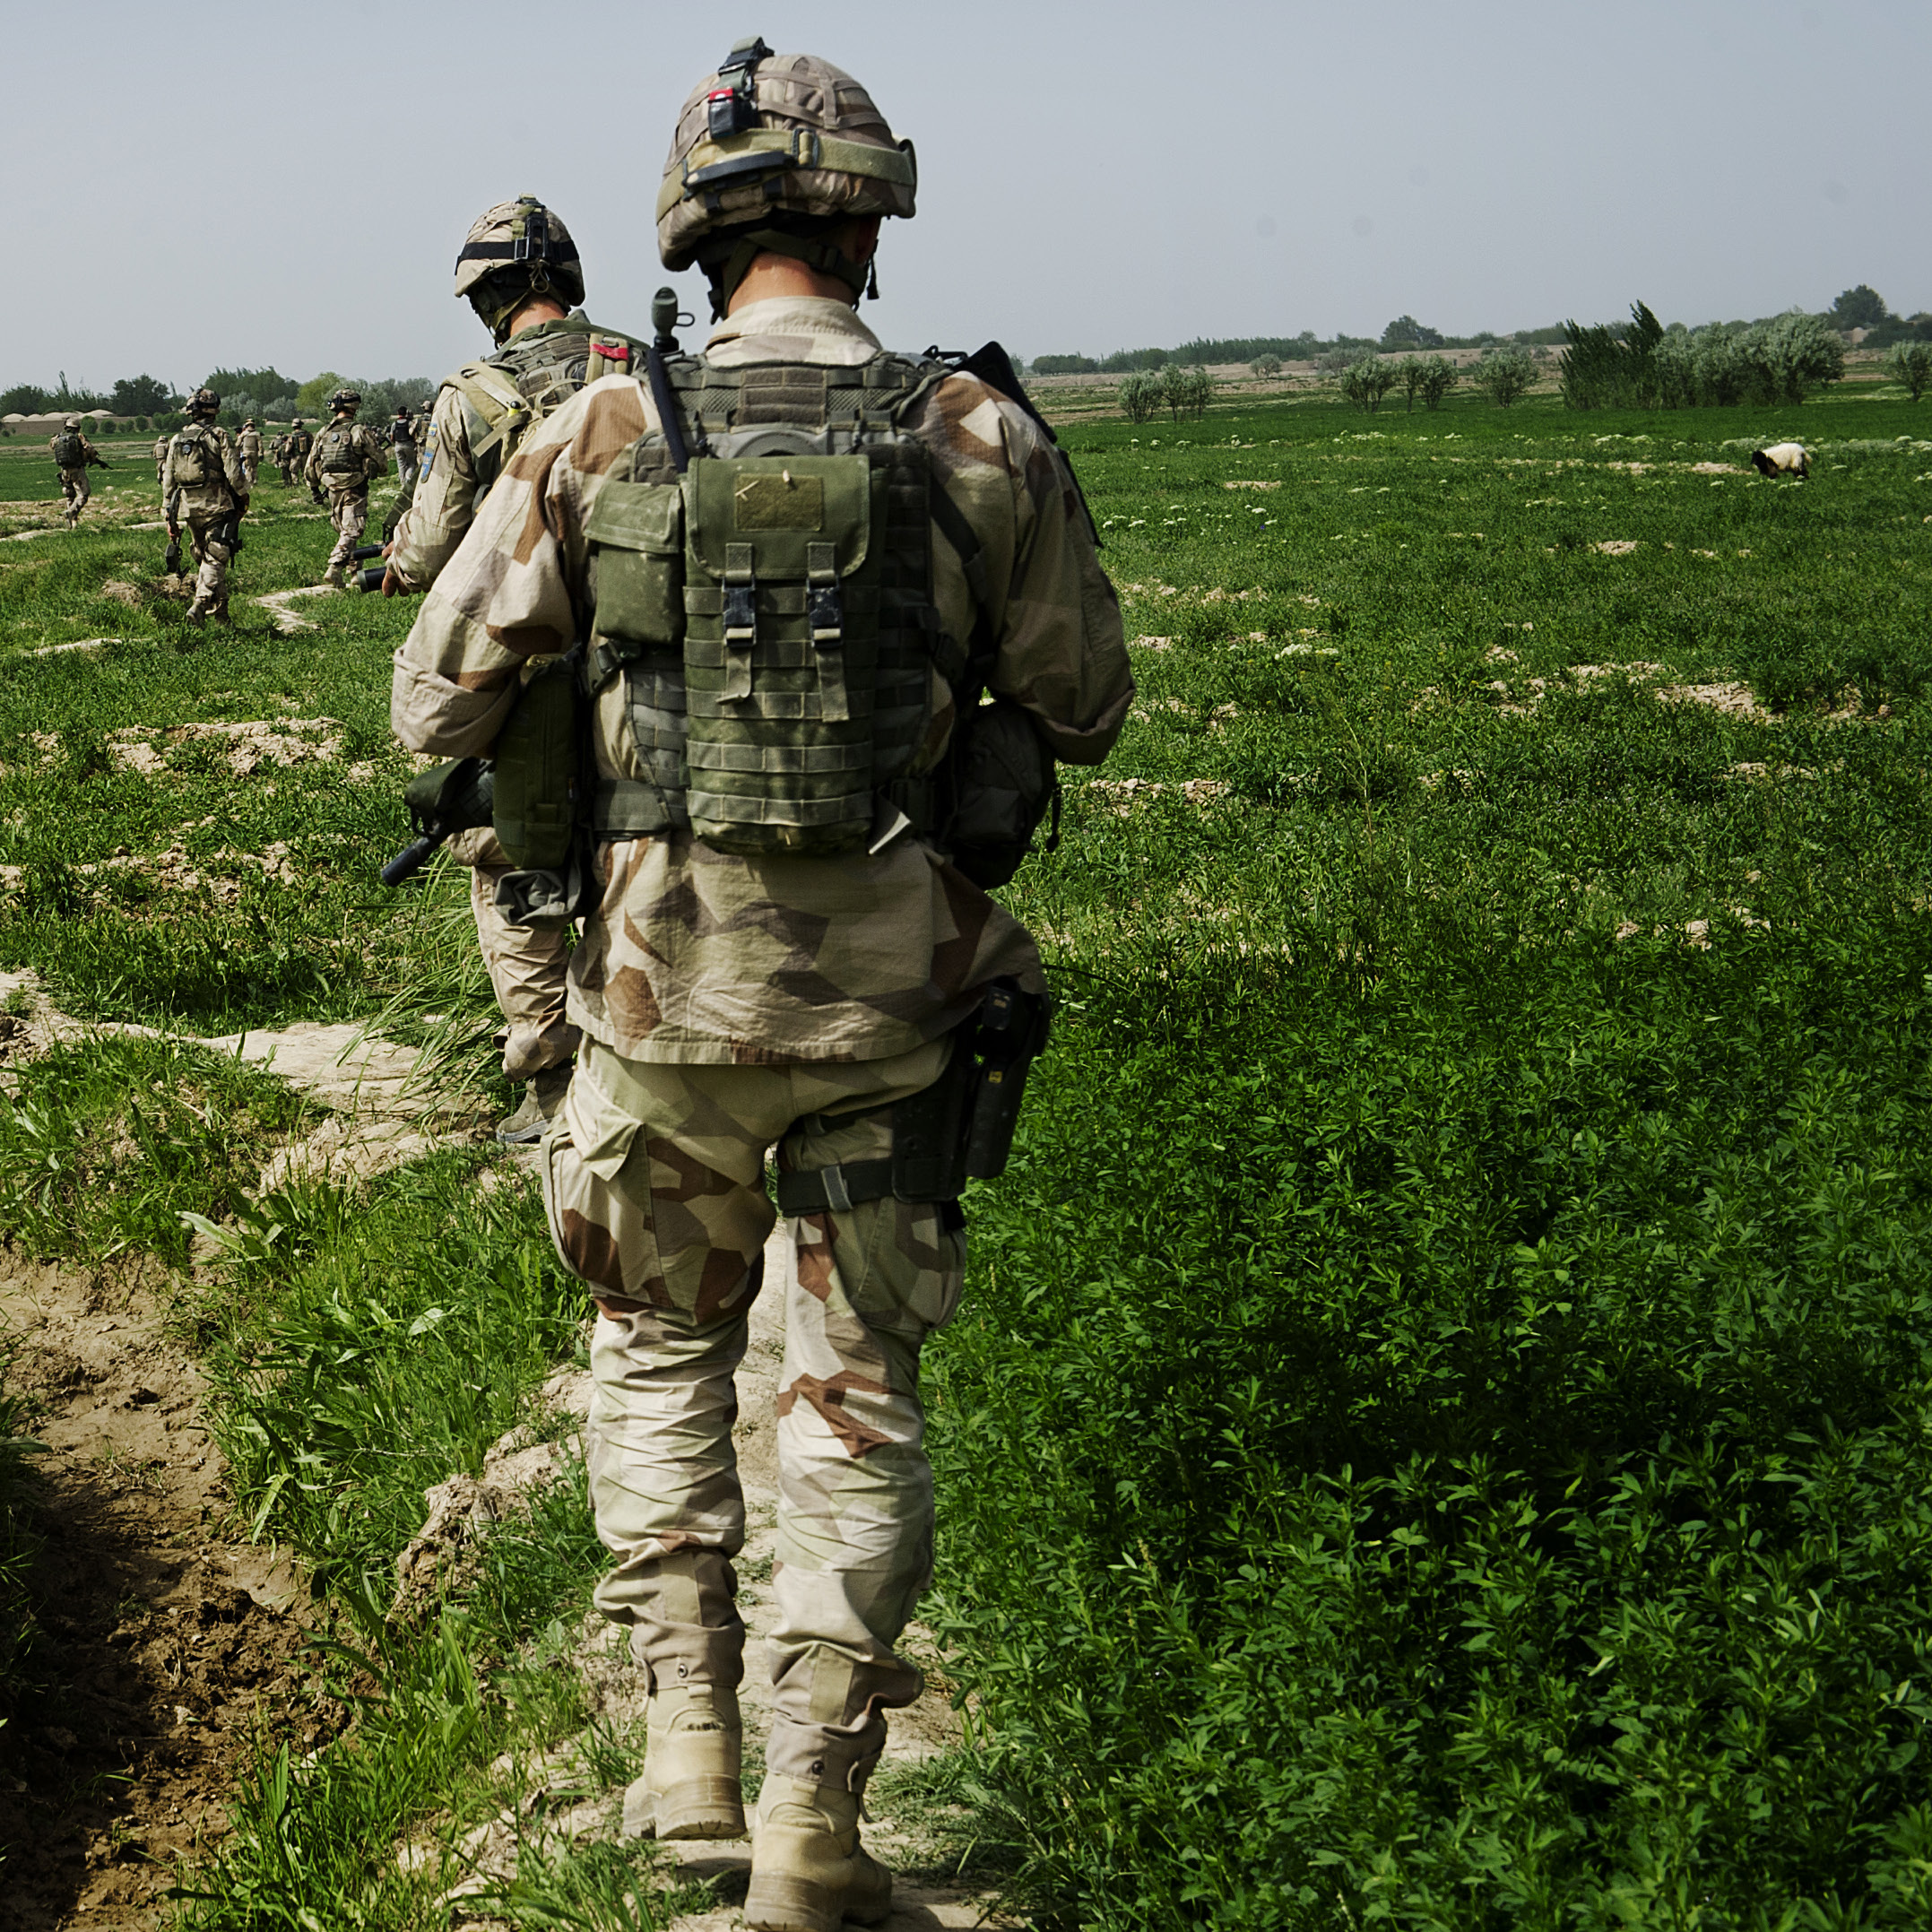 SJÄLVMORD Det har länge varit känt att militär tjänstgöring kan innebära trauman som ger upphov till psykiskt lidande.